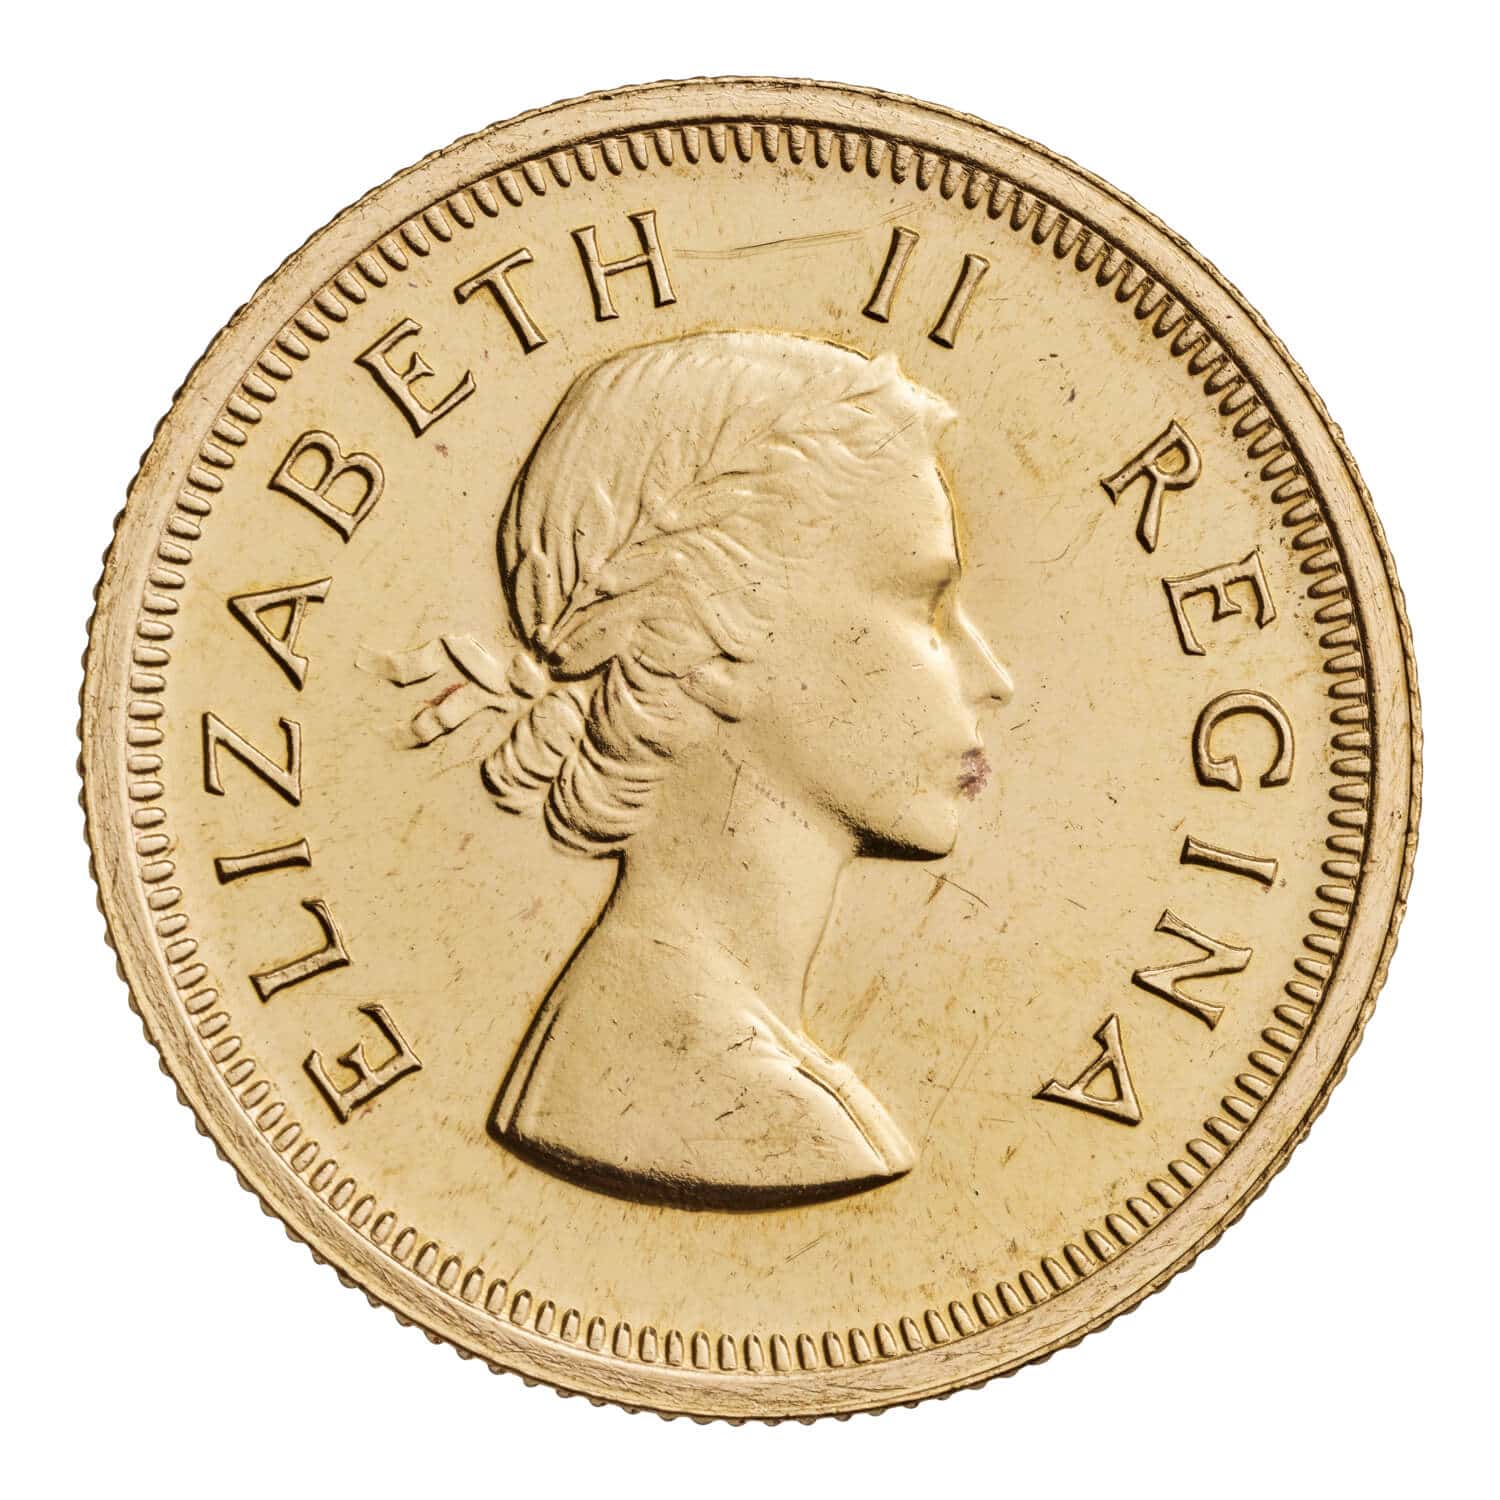 1955 Queen Elizabeth II South Africa Pound obverse